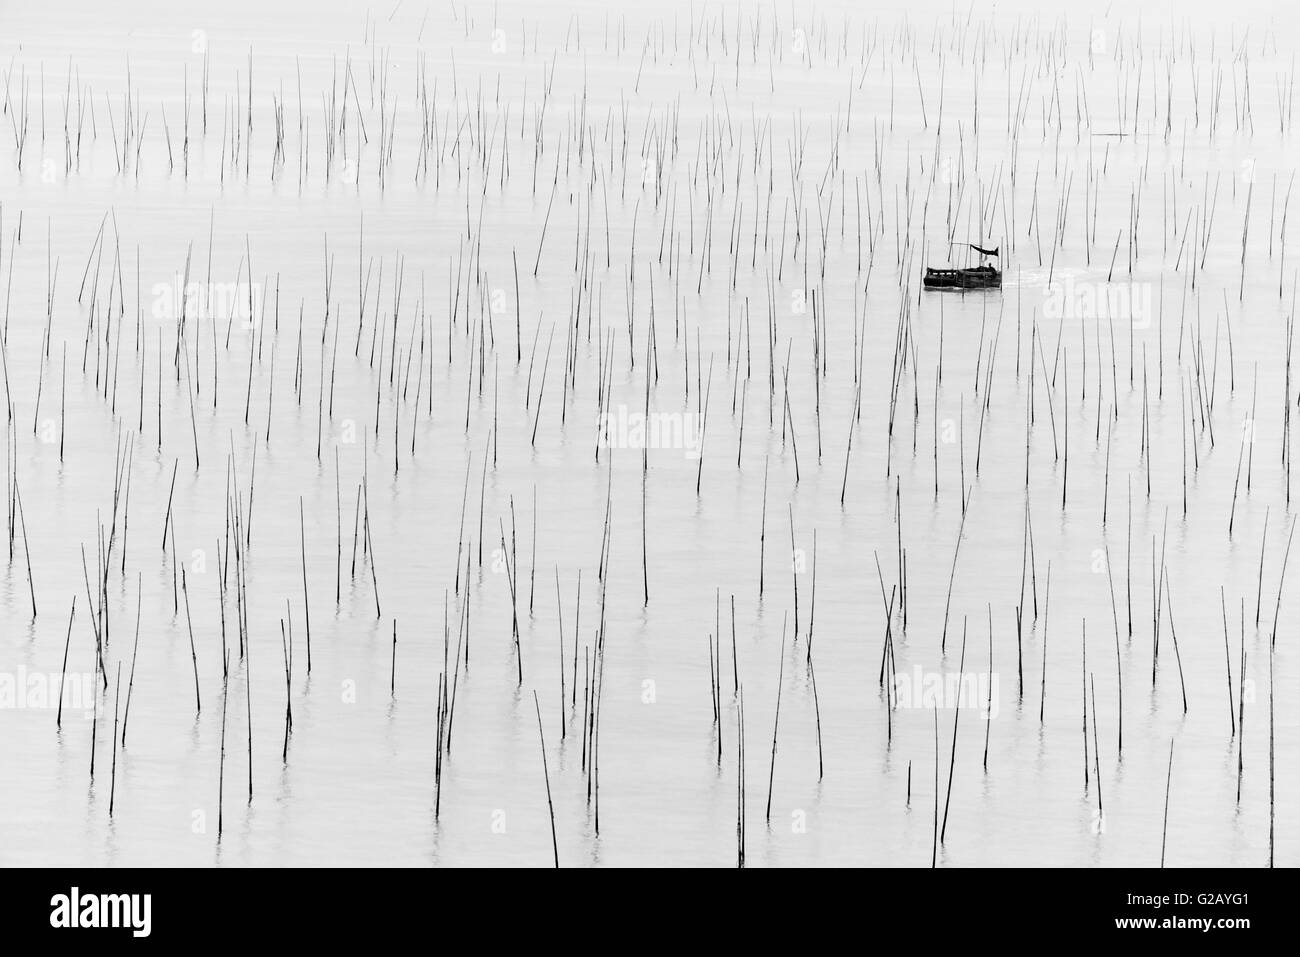 Angelboot/Fischerboot durch Bambusstangen Algen Farm, Küste von East China Sea, Xiapu, Provinz Fujian, China Stockfoto